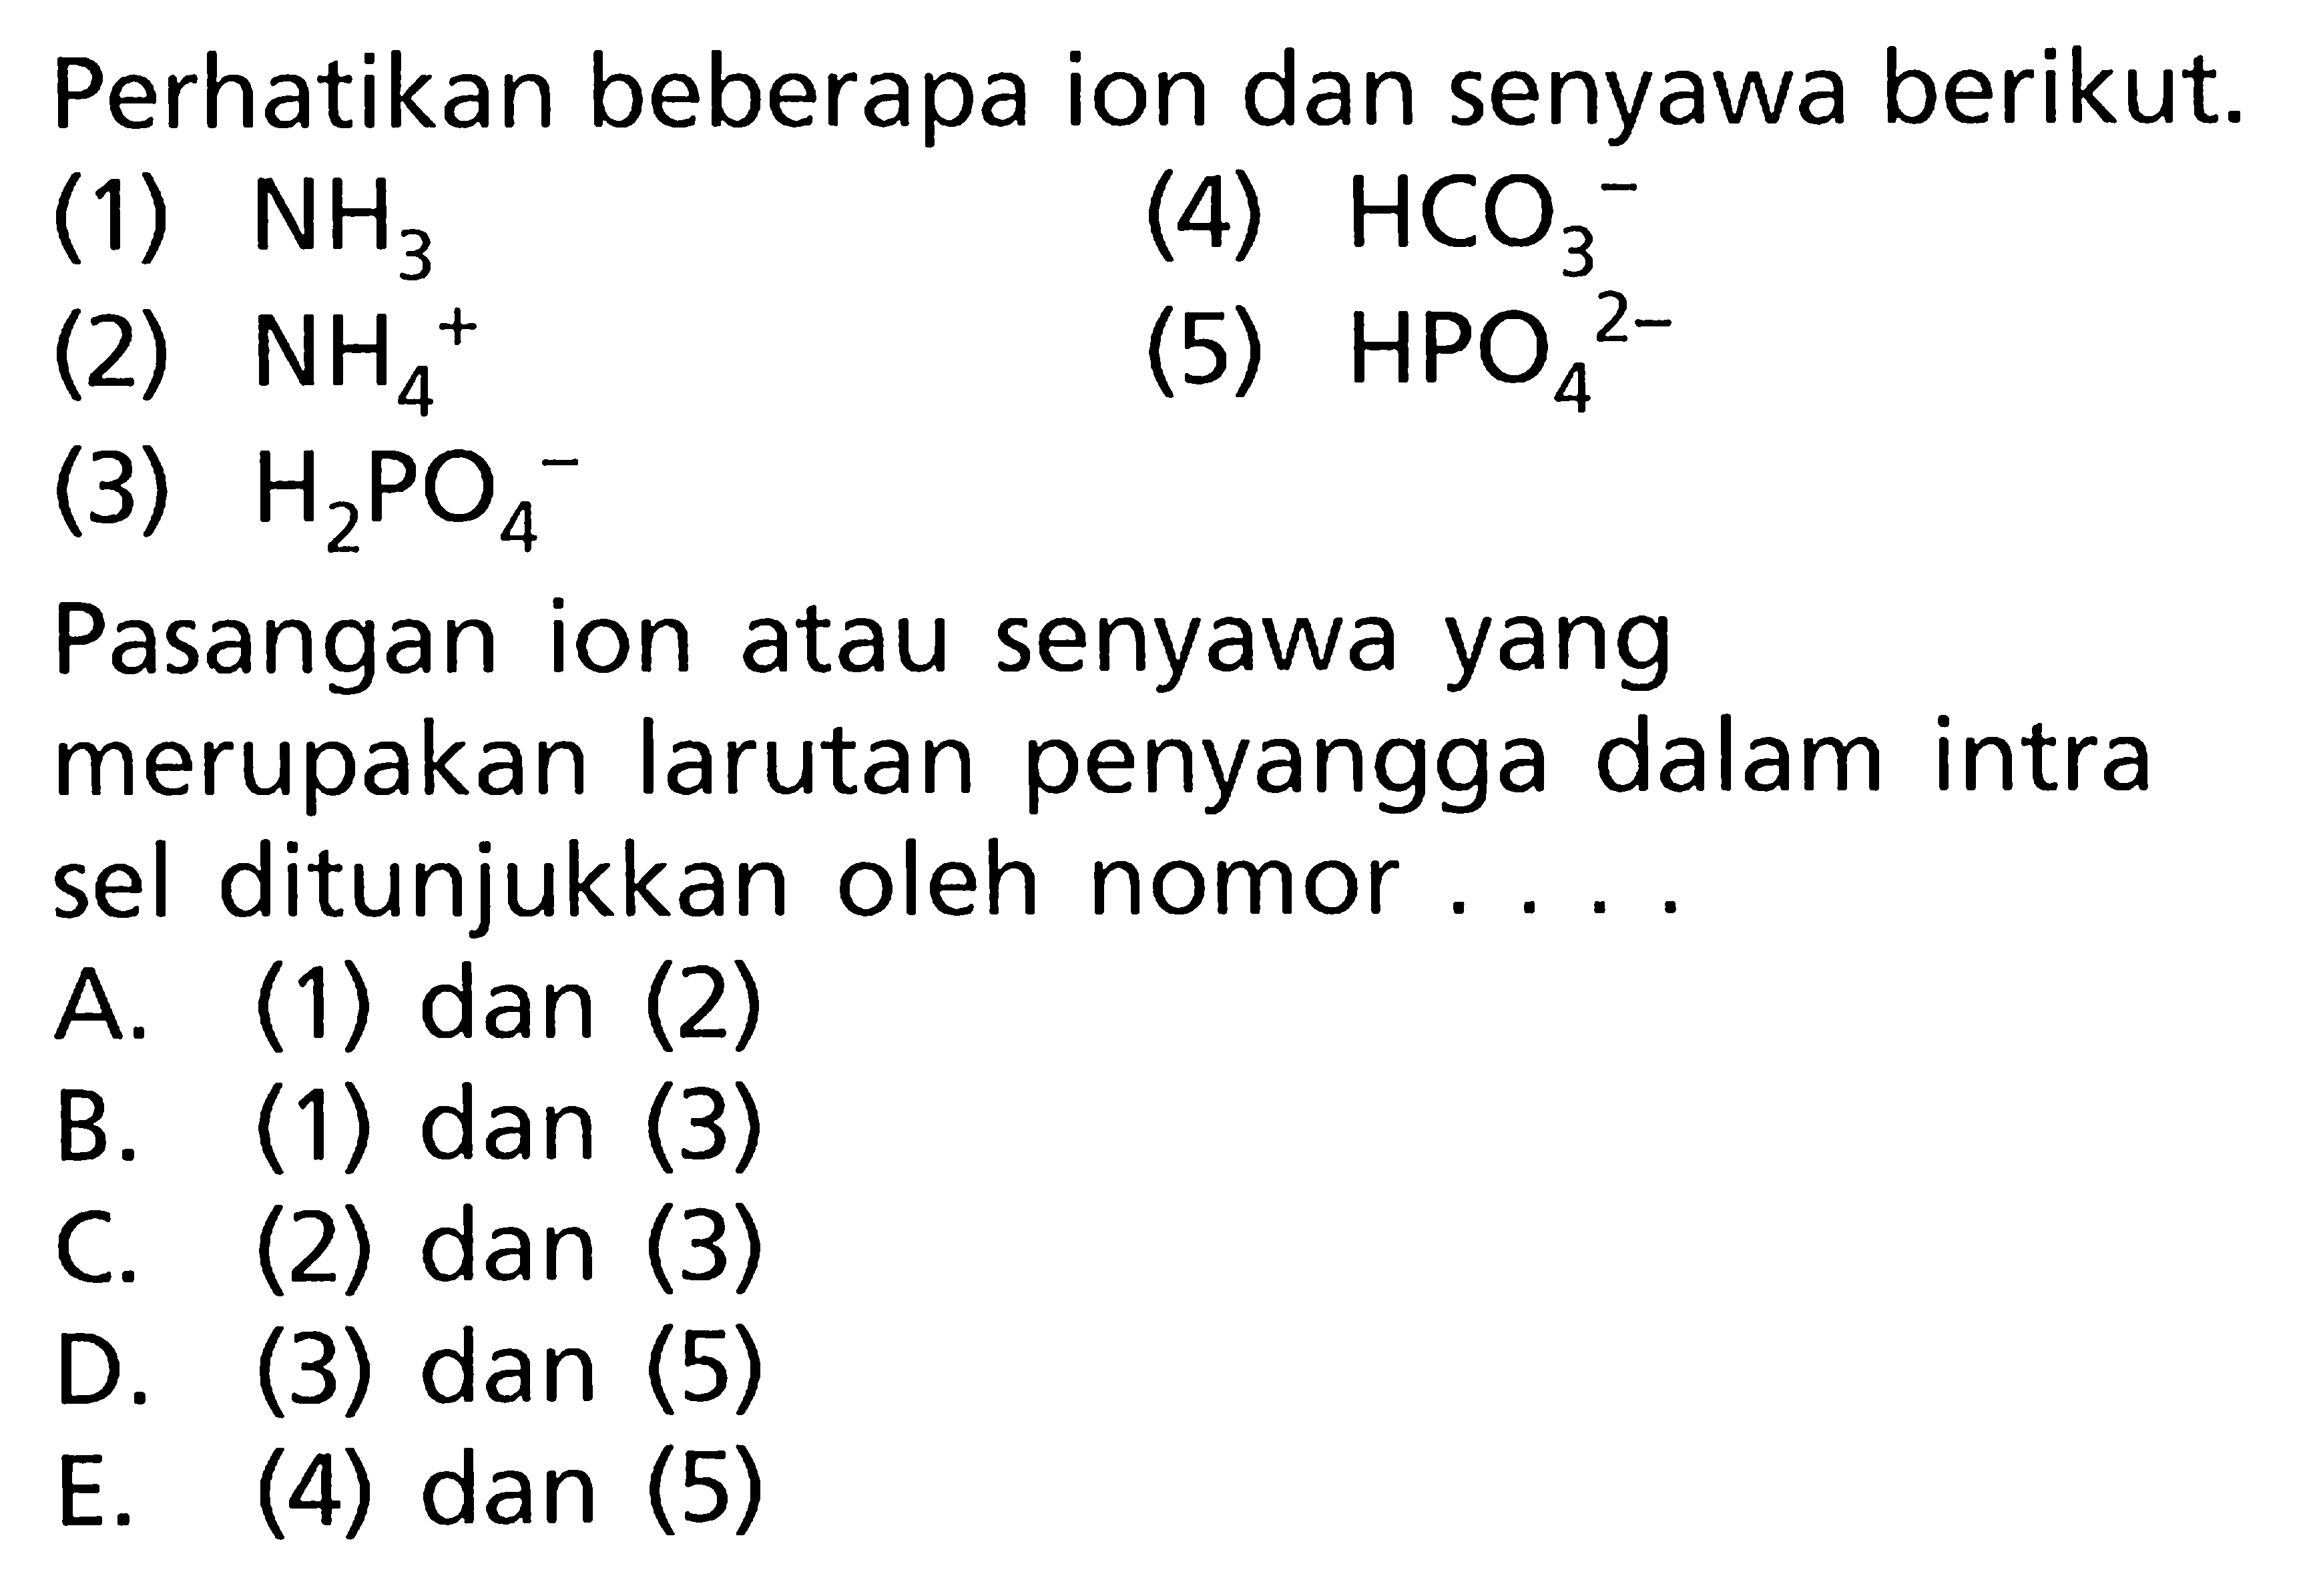 Perhatikan beberapa ion dan senyawa berikut. (1) NH3 (2) NH4^+ (3) H2PO4 (4) HCO3^- (5) HPO4^2- Pasangan ion atau senyawa yang merupakan larutan penyangga dalam intra sel ditunjukkan oleh nomor.... 